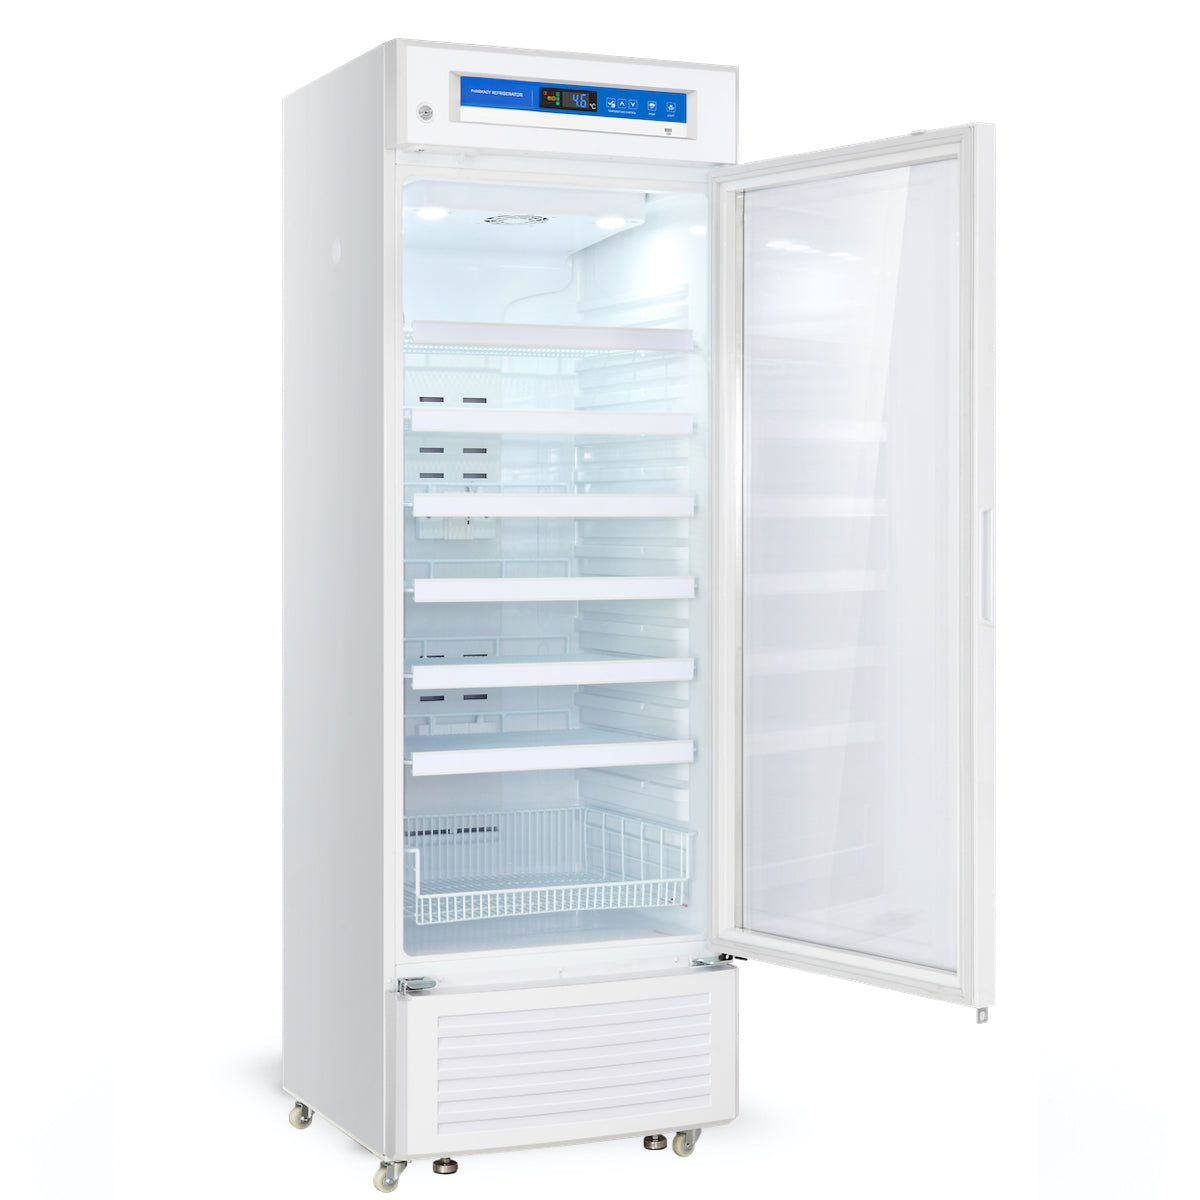 18909 Refrigerator Box - Henry Schein Medical